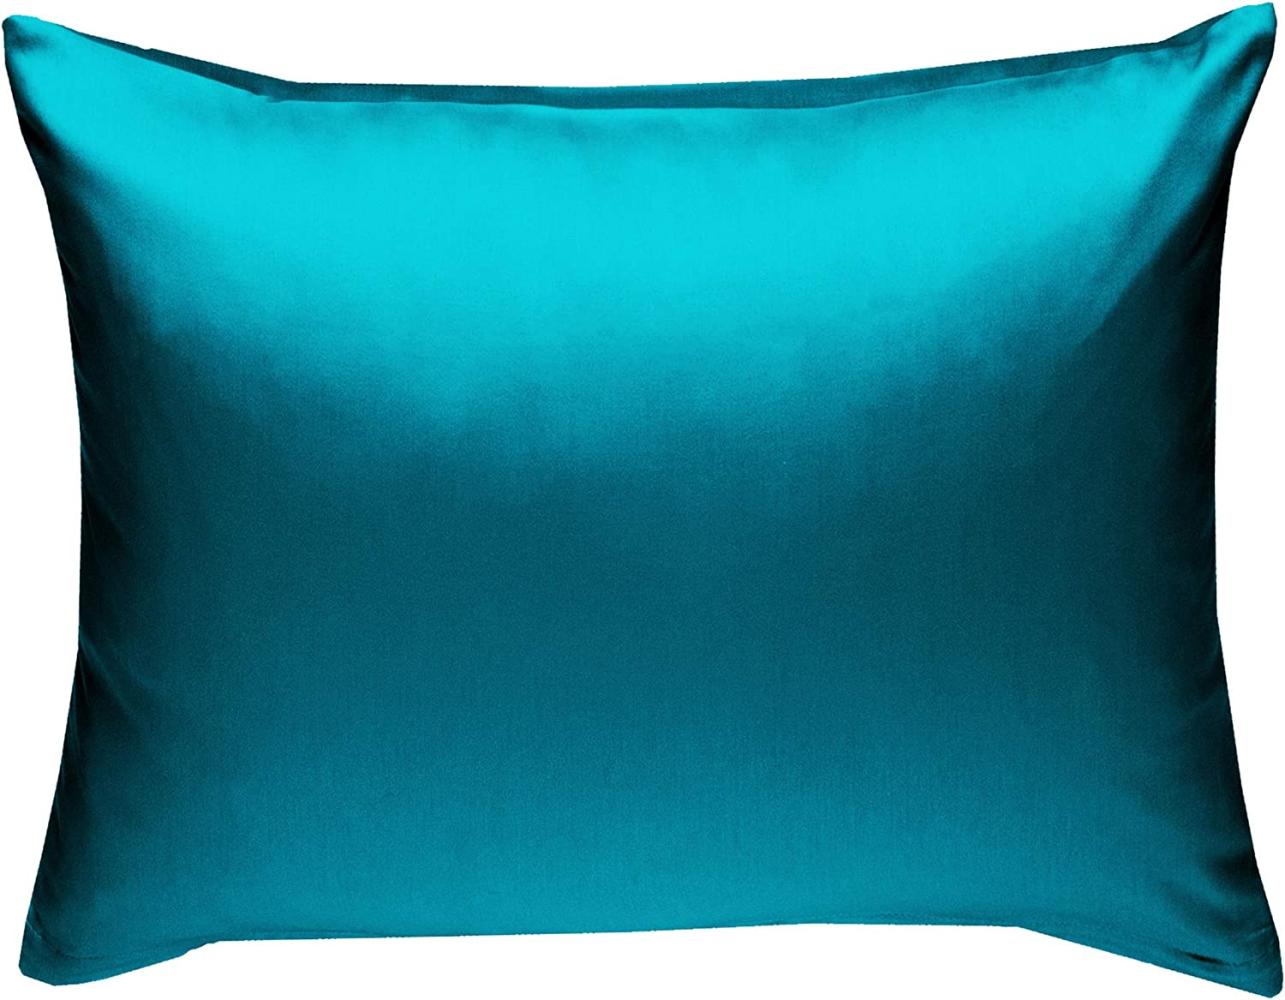 Bettwaesche-mit-Stil Mako-Satin / Baumwollsatin Bettwäsche uni / einfarbig petrol blau Kissenbezug 70x90 cm Bild 1